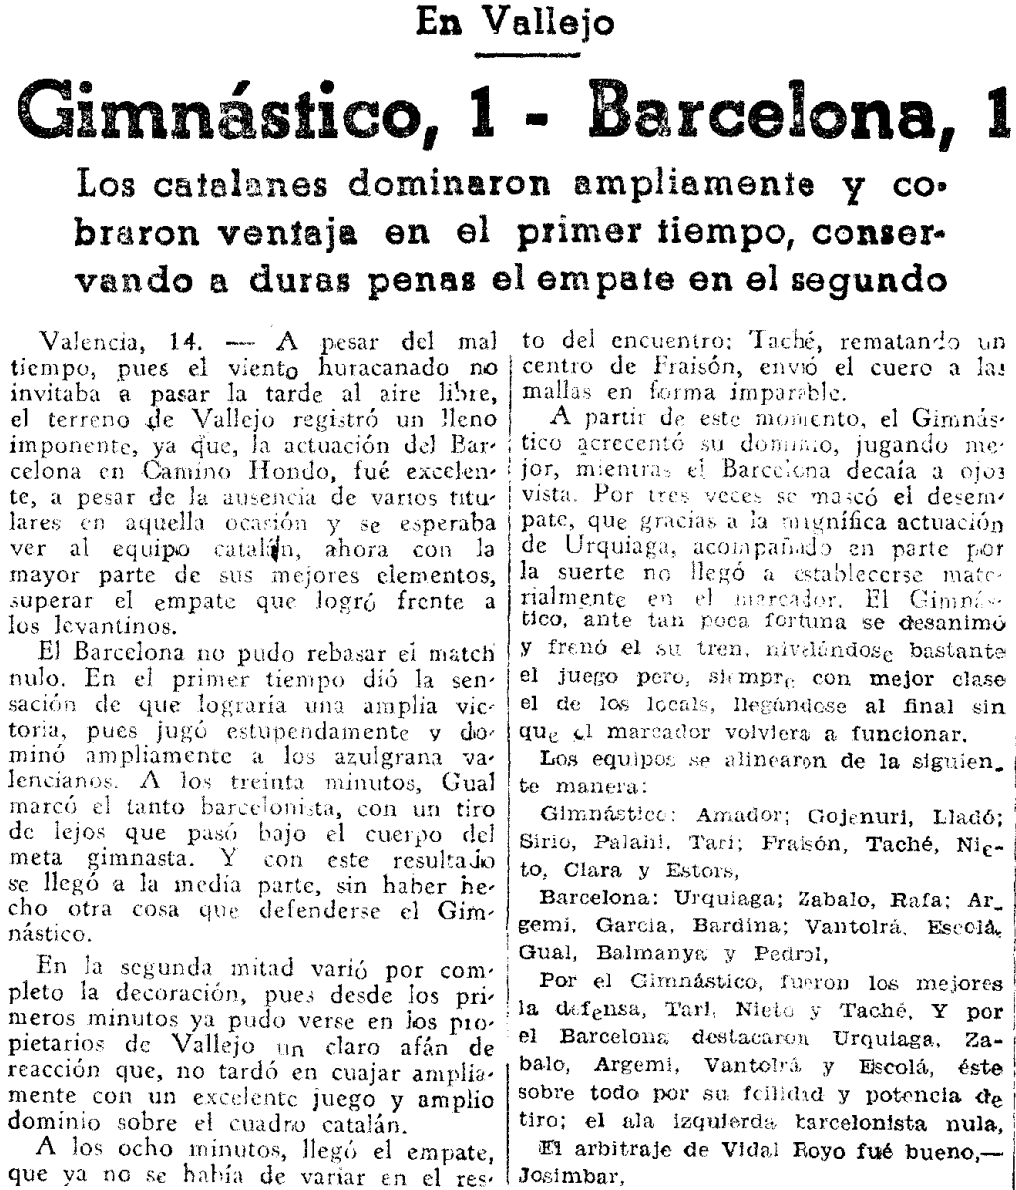 1937.03.14 (14 марта 1937), Гимнастико - Барселона, 1-1.png